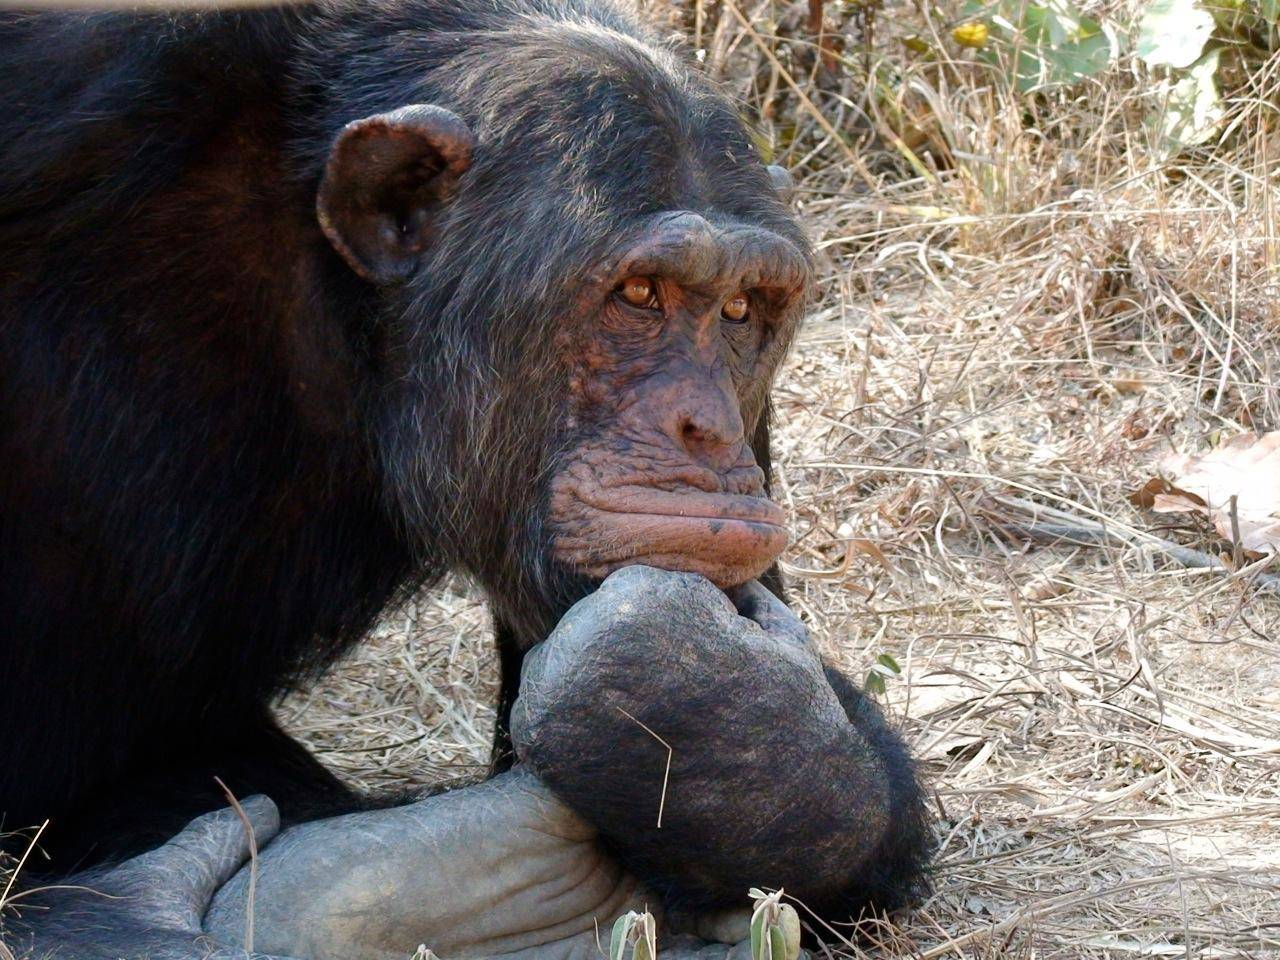 क्या चिंपांजी के अनाथ हो जाने के बाद आता है उनके व्यवहार में कोई बदलाव, जानिए